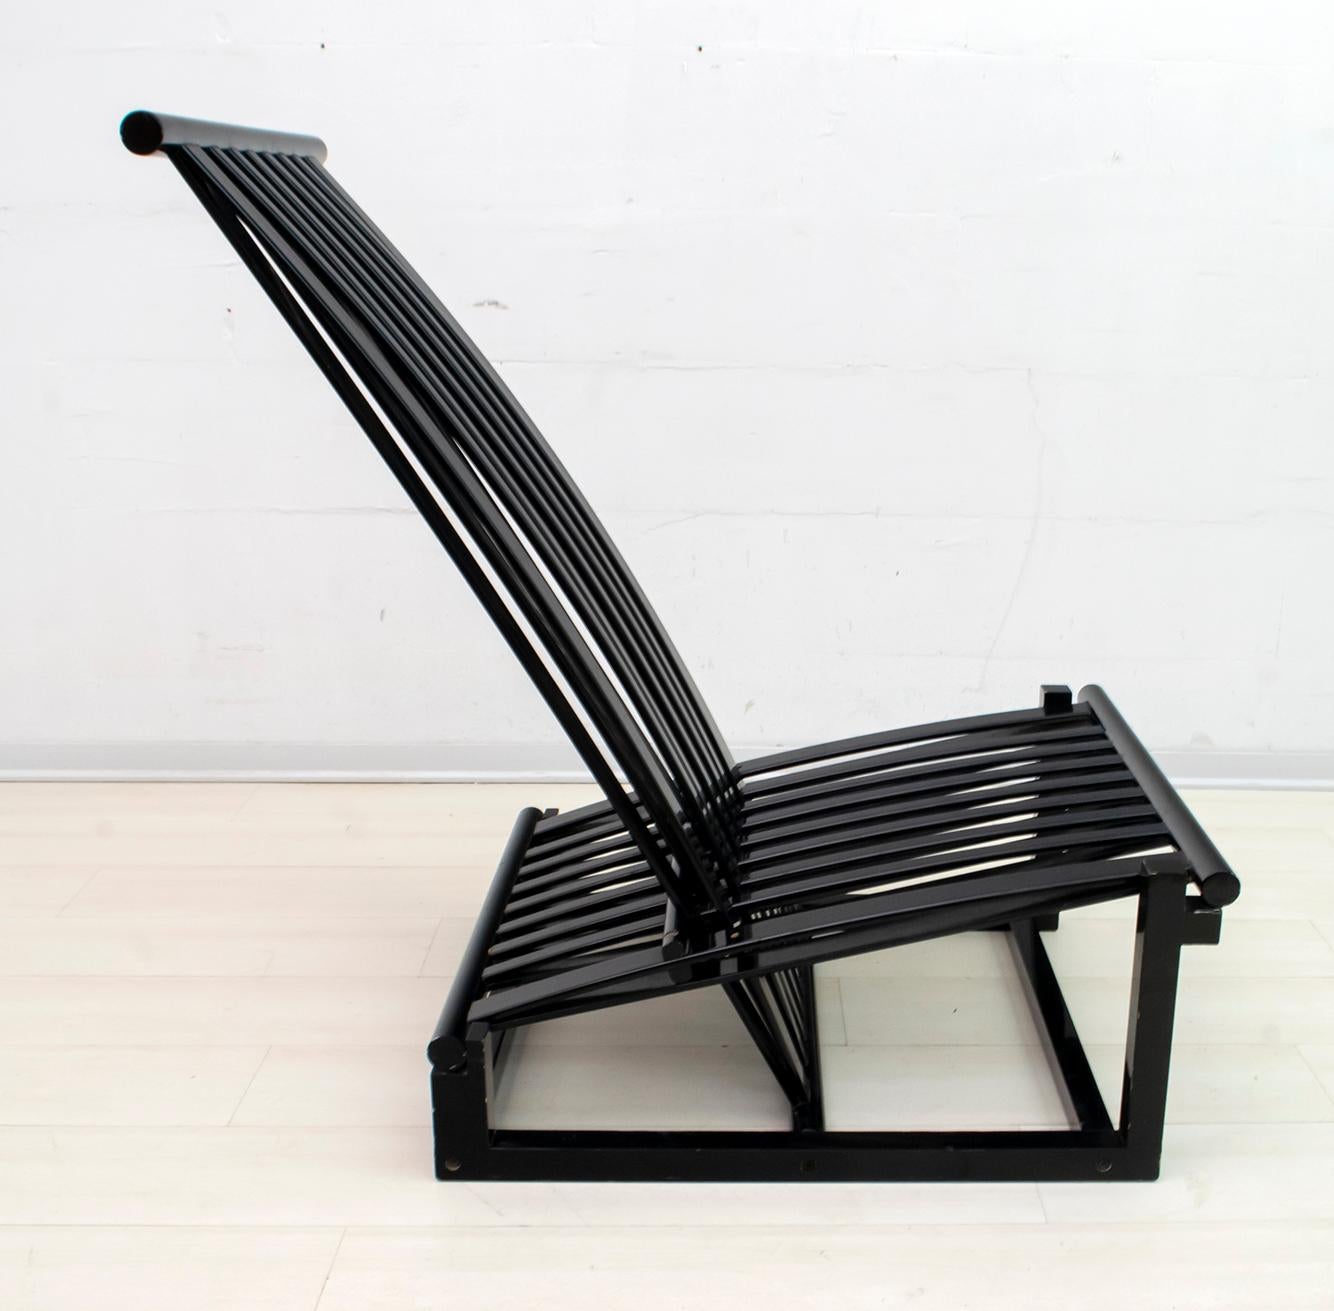 Fauteuil relax conçu par l'architecte italien Carlo Pagella et produit par Romanutti dans les années 1970. Le fauteuil est en frêne cintré et laqué noir, comme sur la photo, le dossier change de position.